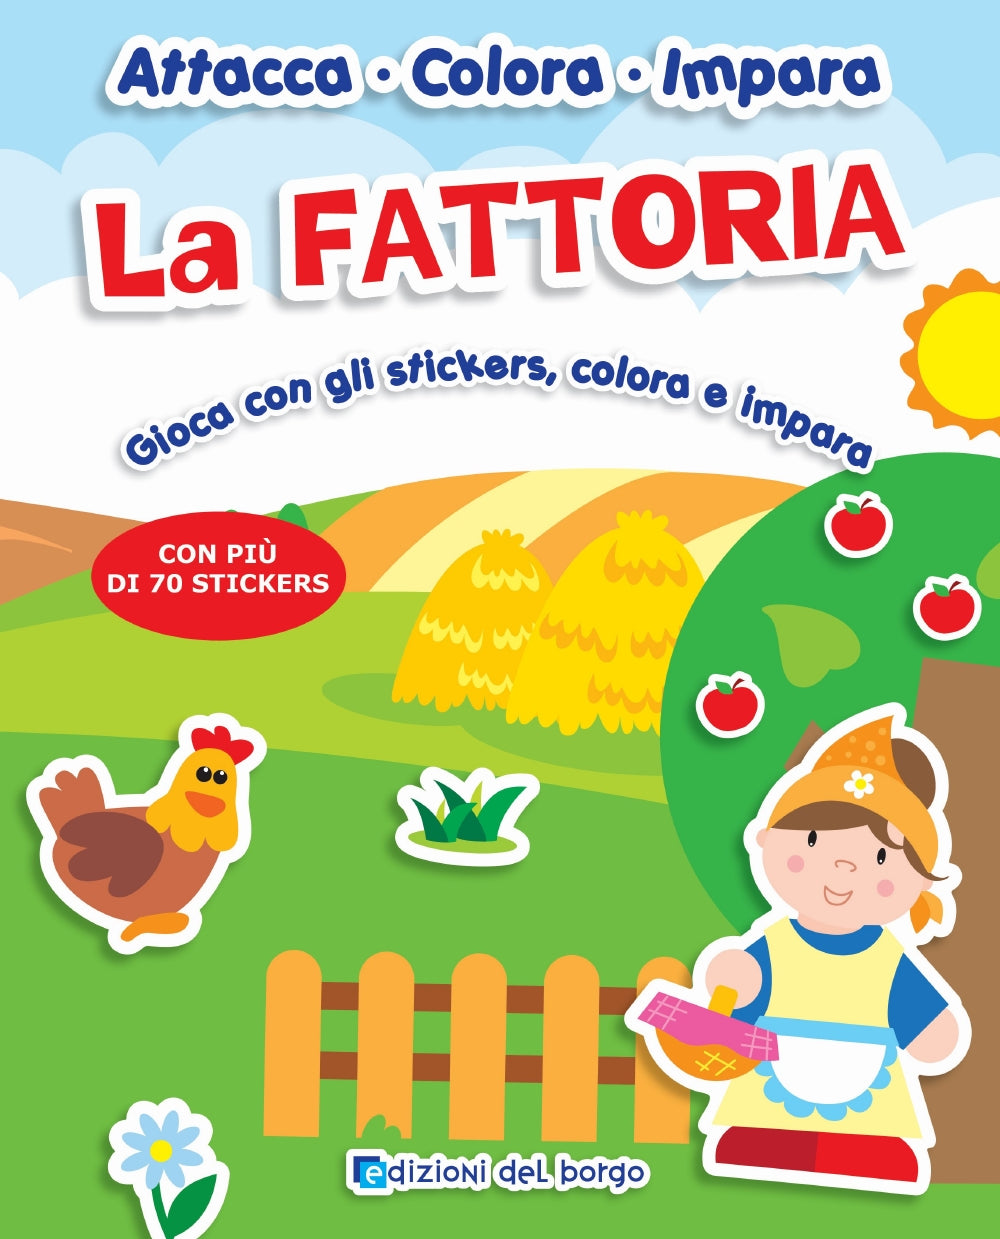 La Fattoria::Gioca con gli stickers, colora e impara - Con più di 70 stickers